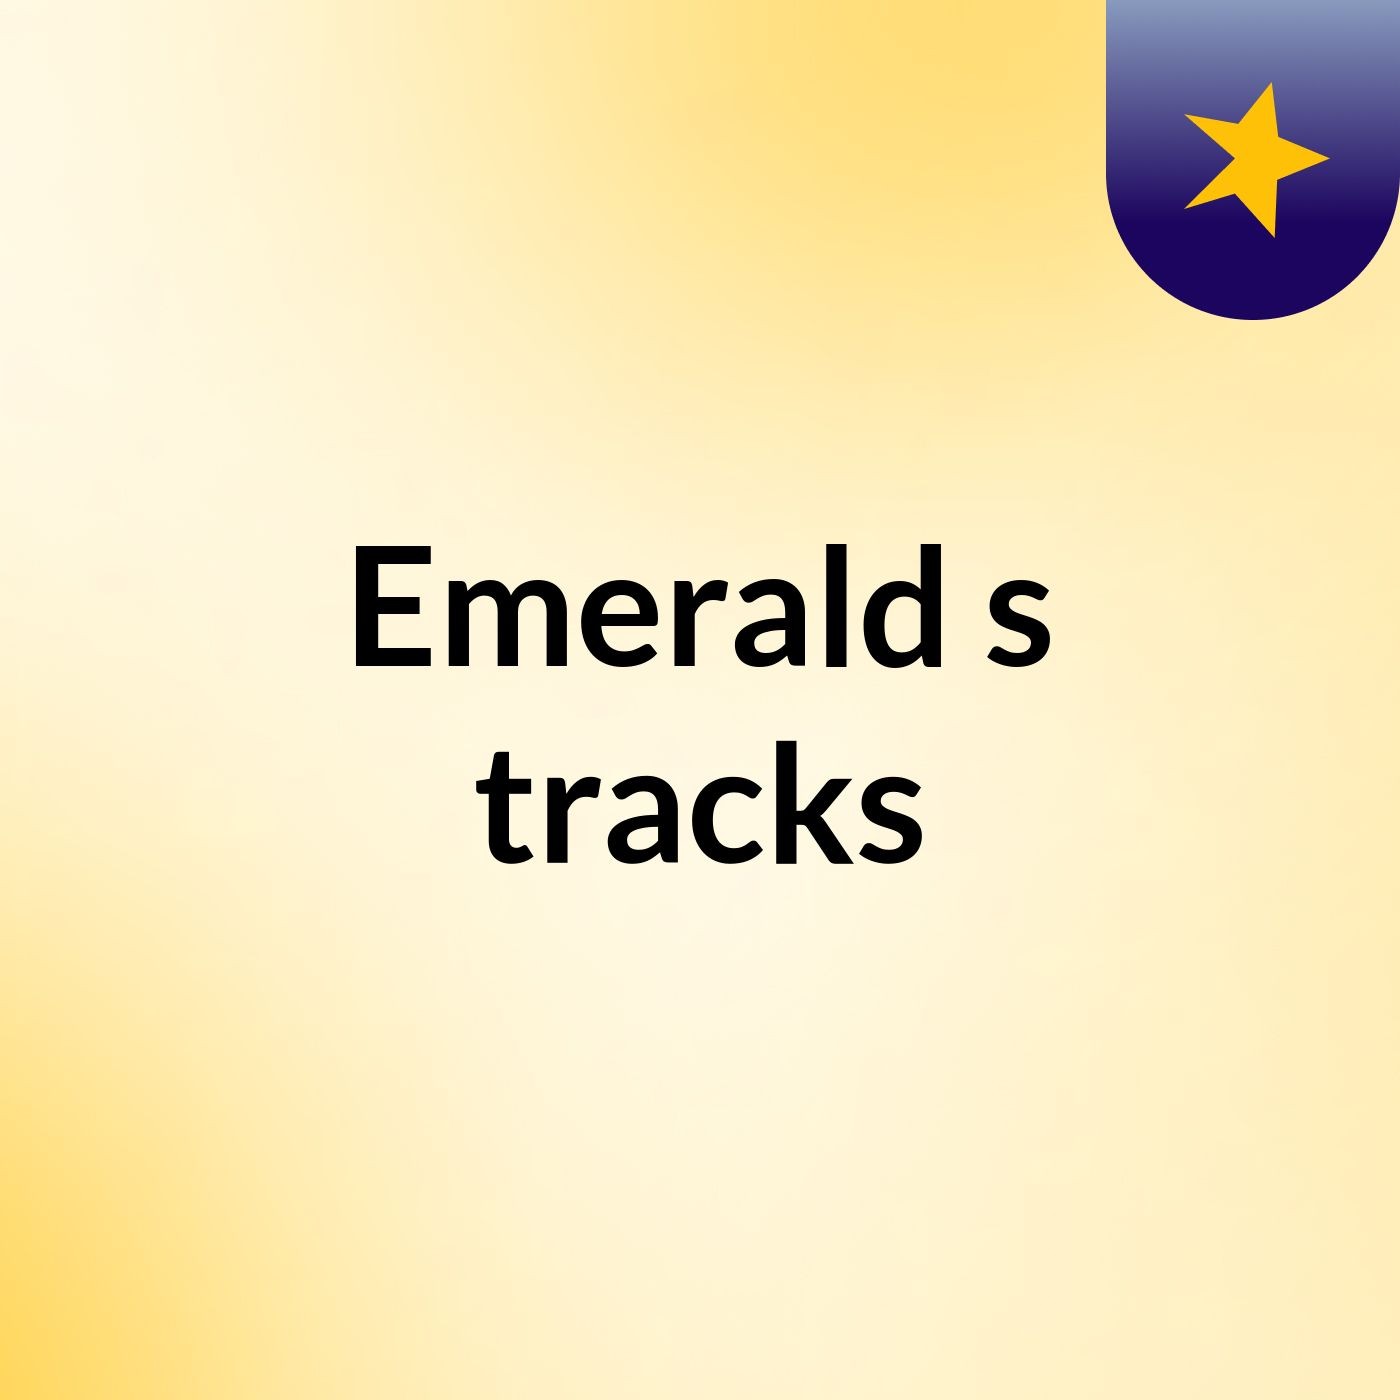 Emerald's tracks